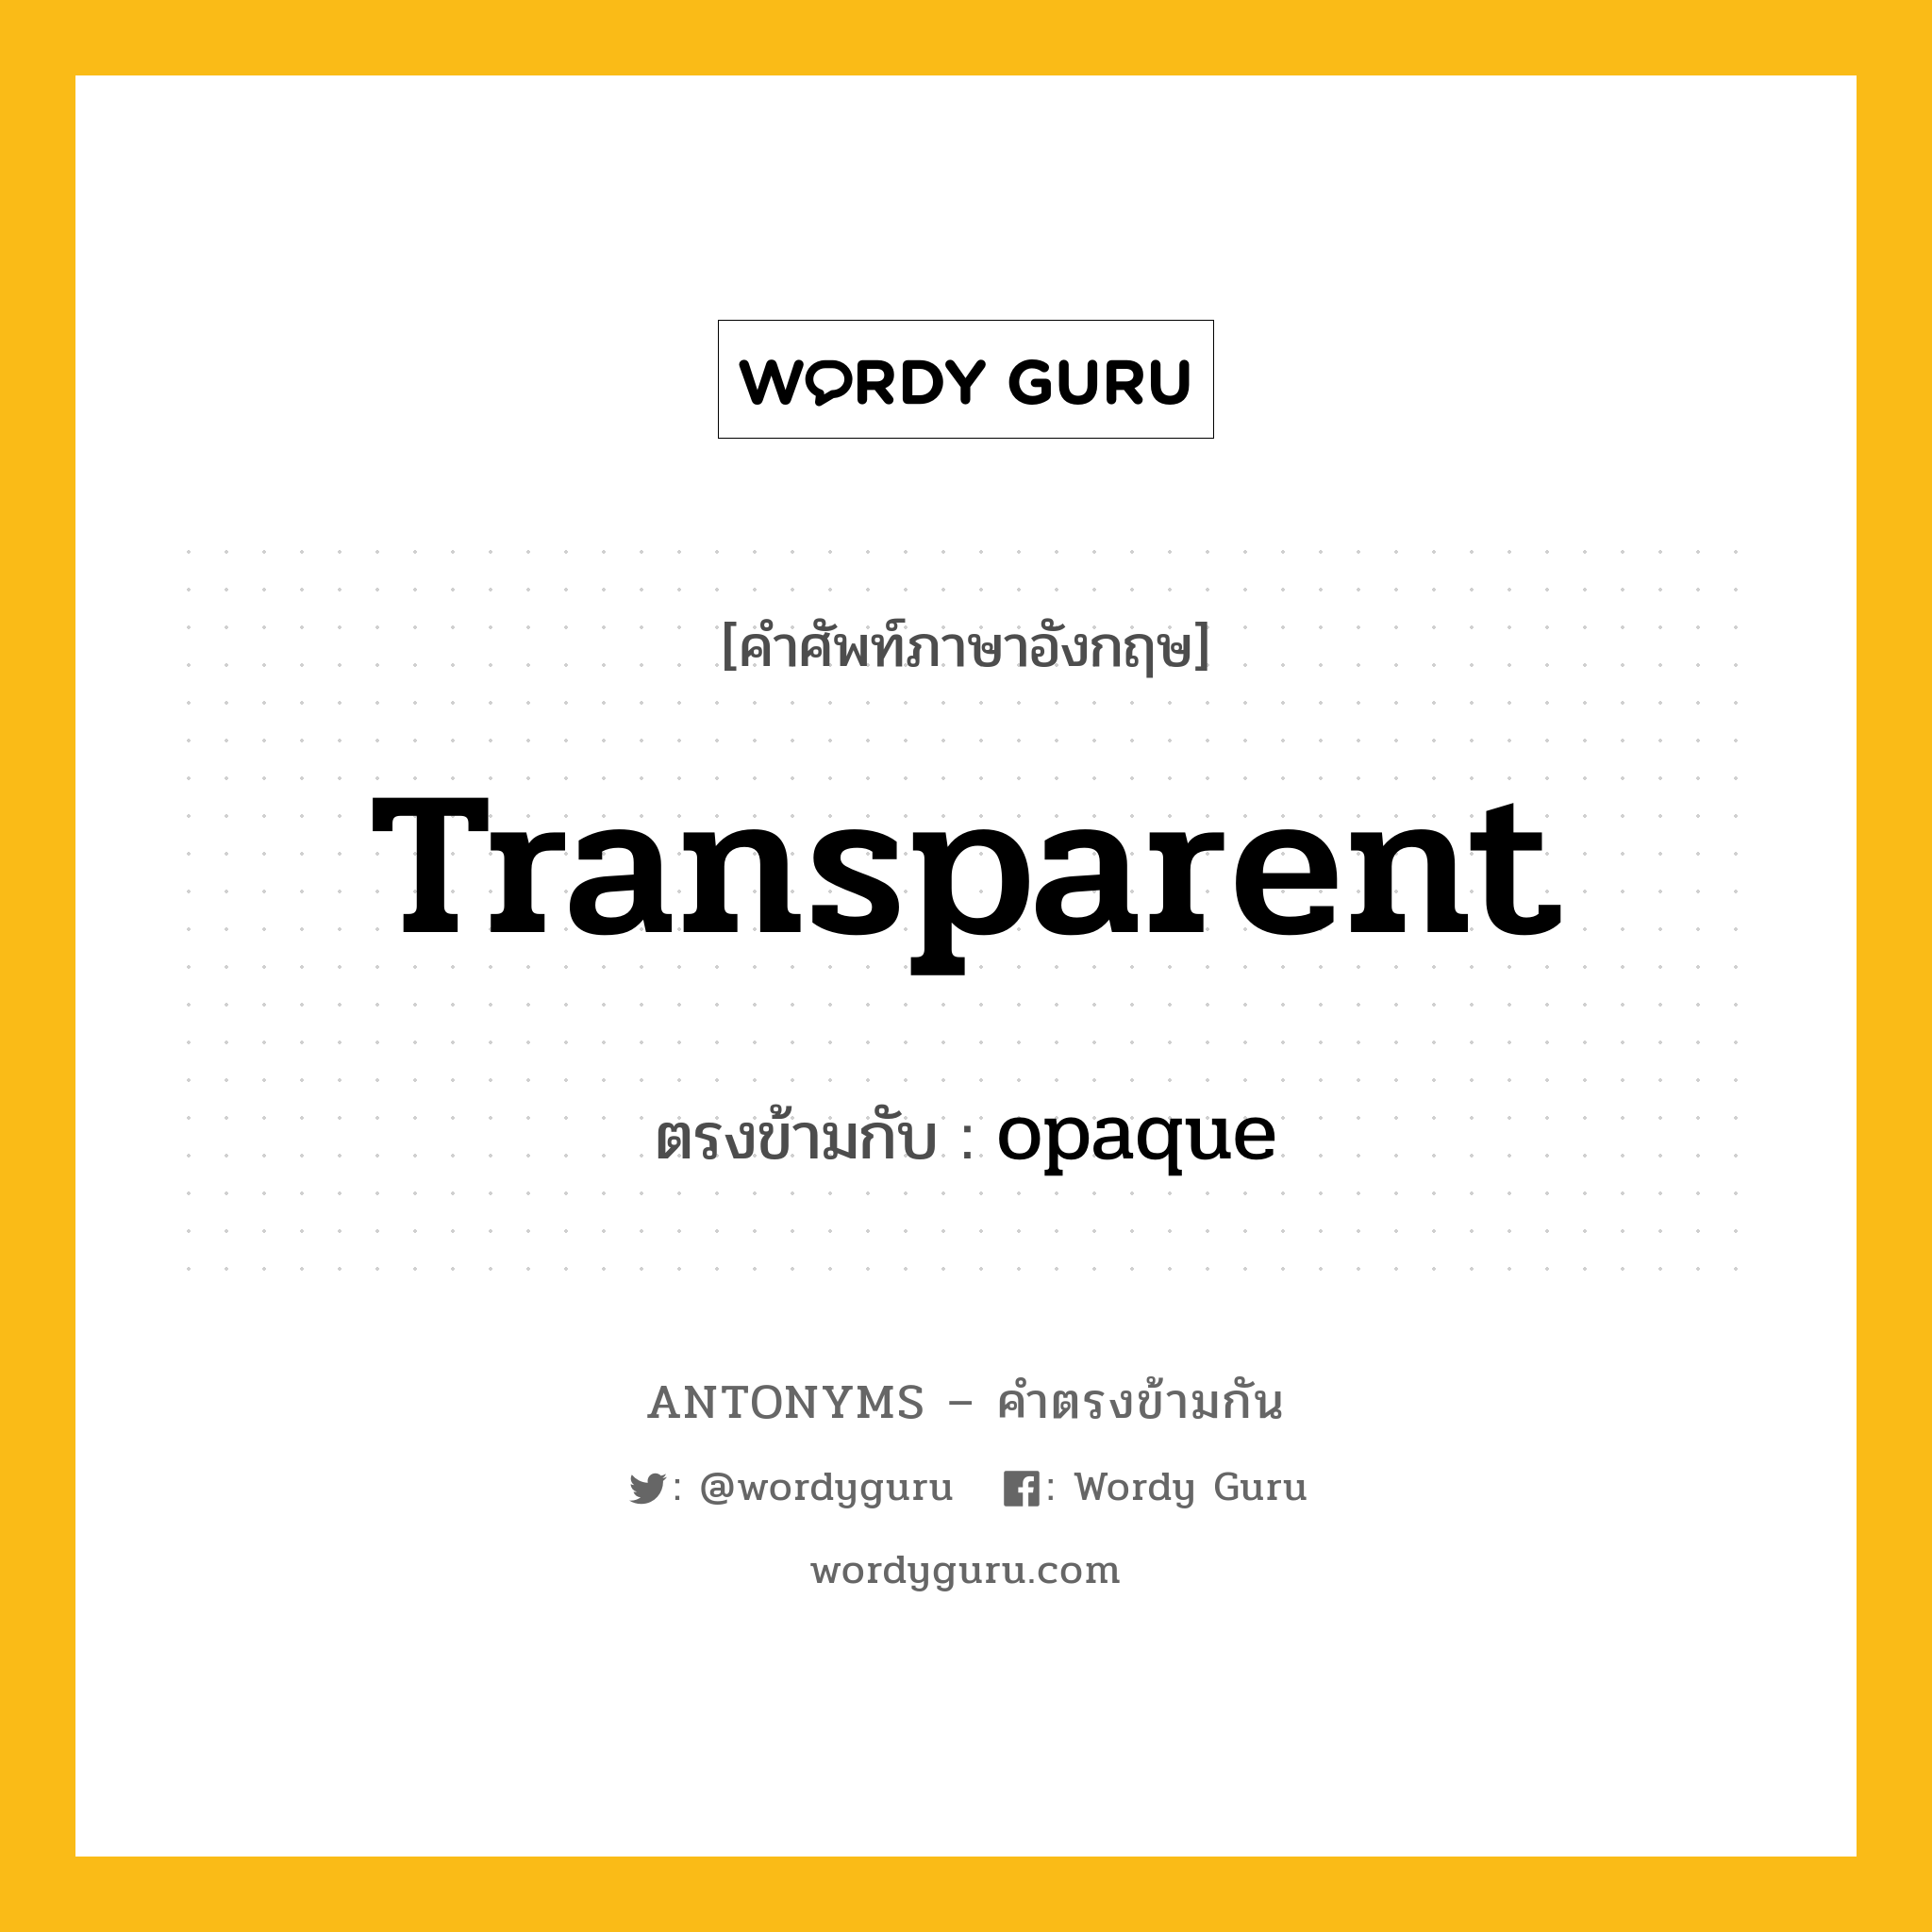 transparent เป็นคำตรงข้ามกับคำไหนบ้าง?, คำศัพท์ภาษาอังกฤษ transparent ตรงข้ามกับ opaque หมวด opaque